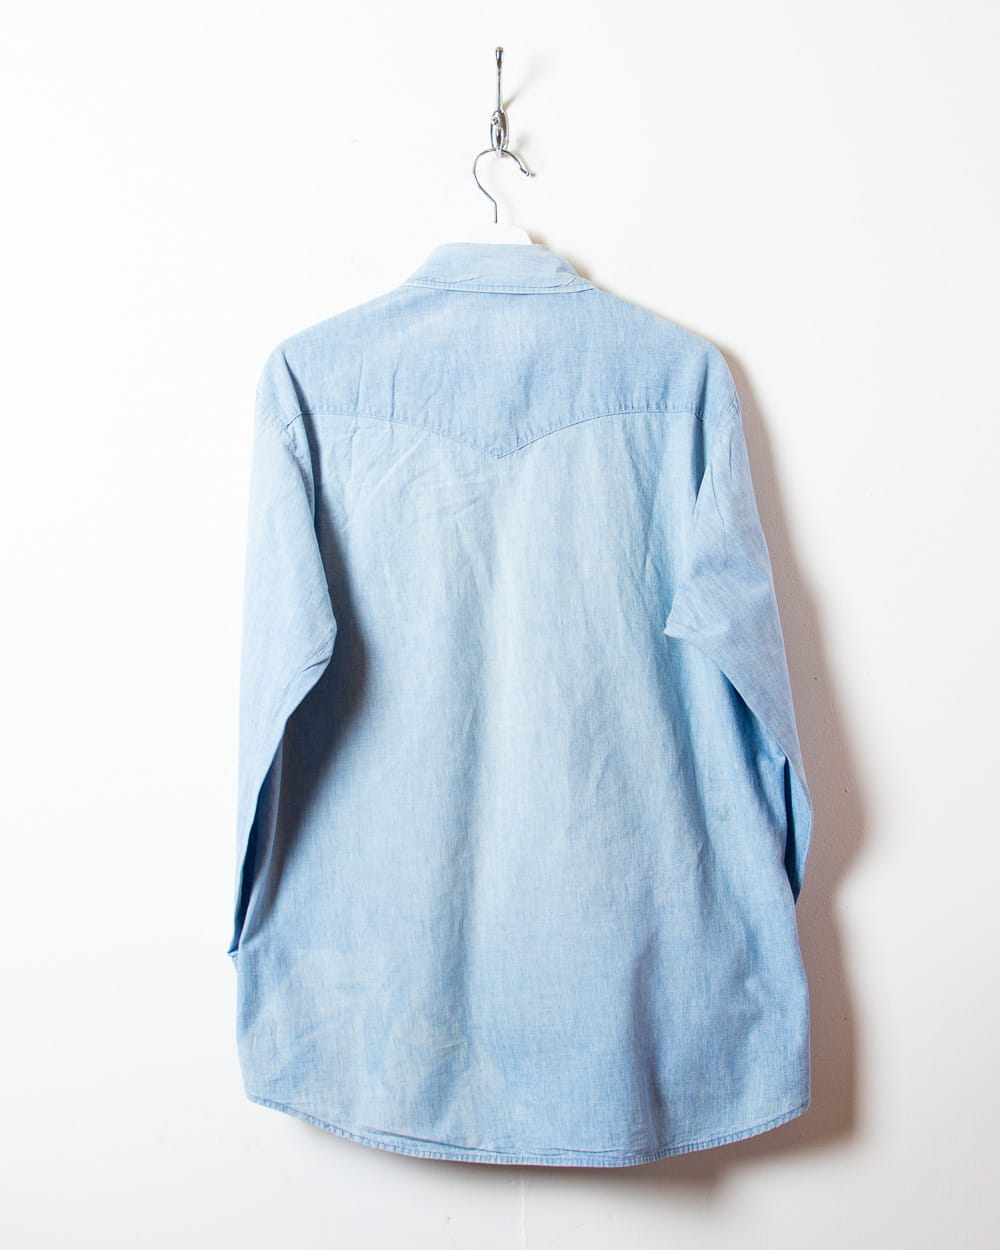 BabyBlue Lee Denim Shirt - Large